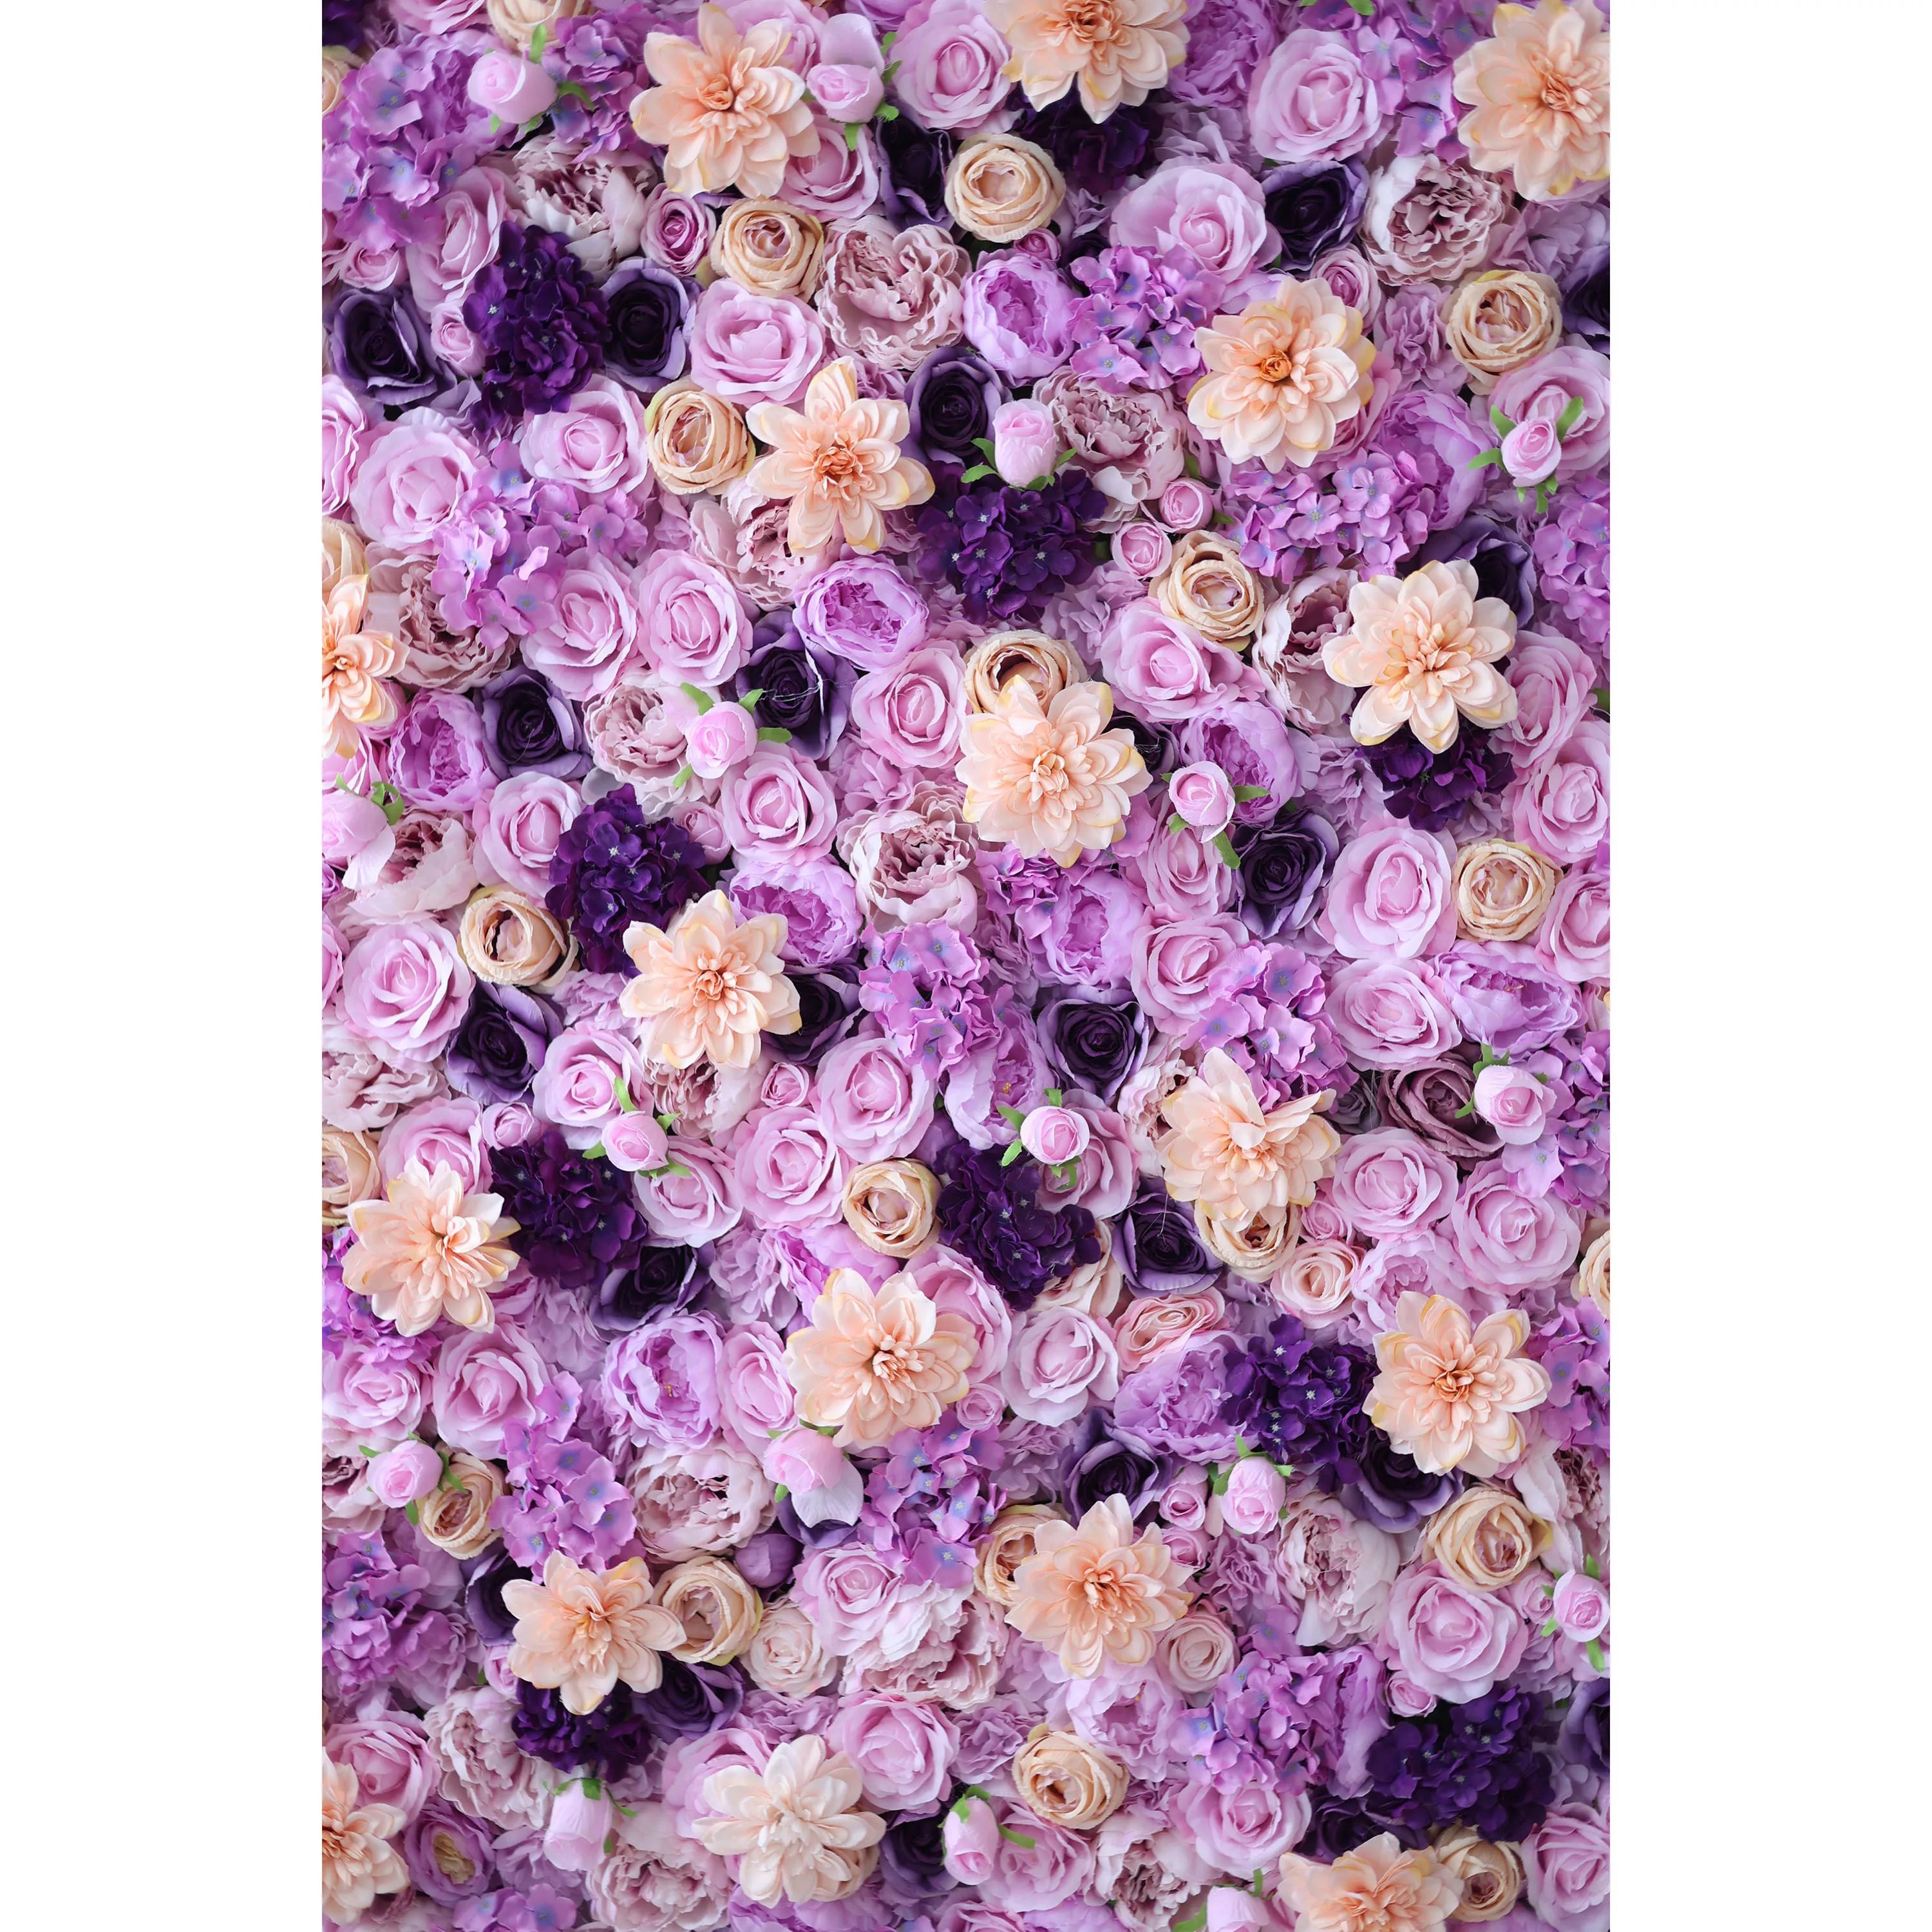 Valar Flowers Lavender Dreamscape : Une symphonie luxuriante de fleurs violettes et pêche – Élégance ultime dans l’art floral-VF-206